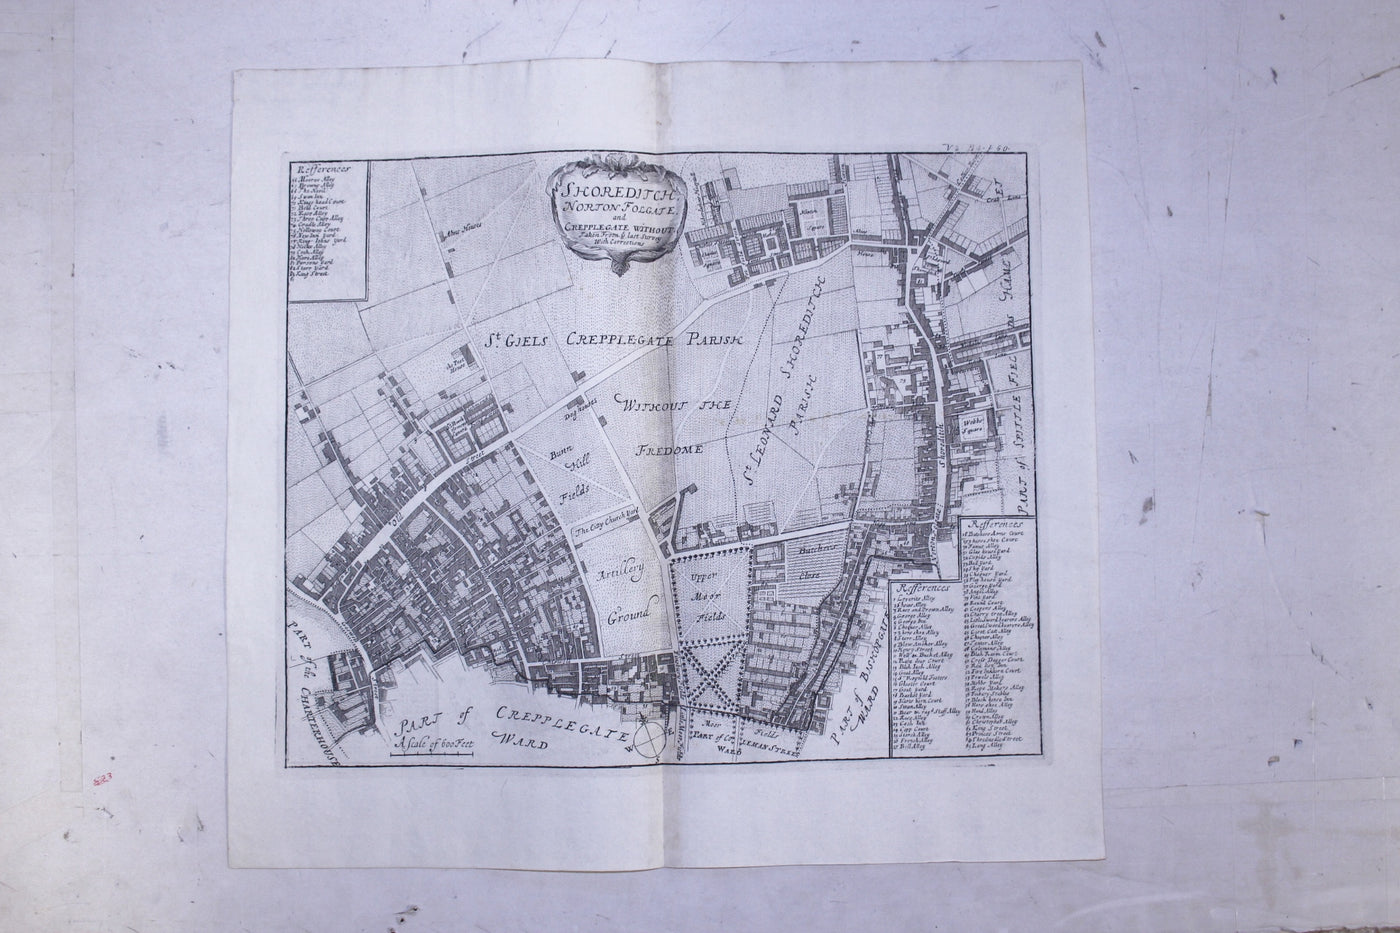 Shoreditch Norton Folgate antique map 1720